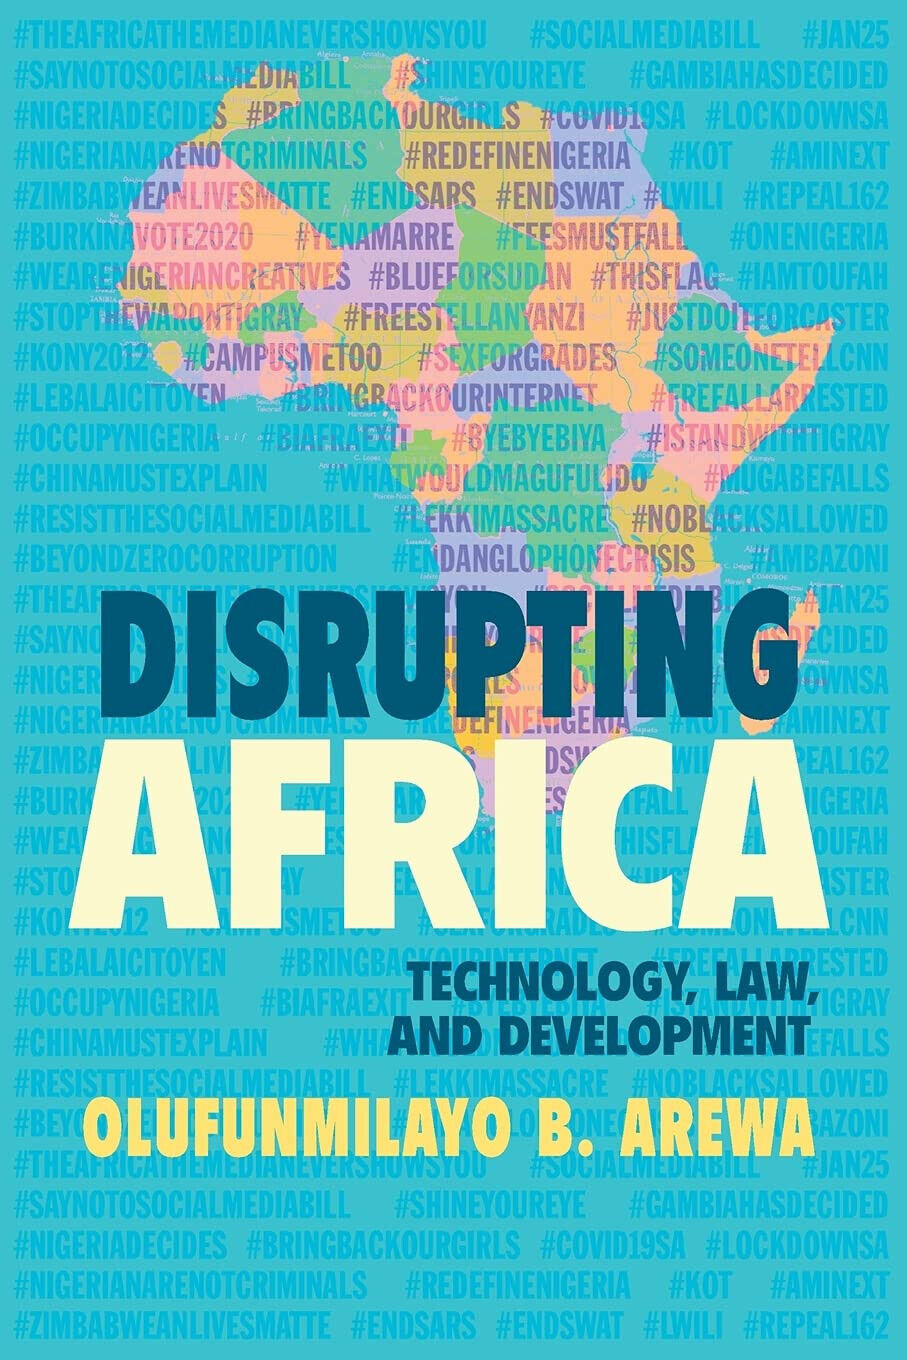 Disrupting Africa - Olufunmilayo B. Arewa - Cambridge, 2021